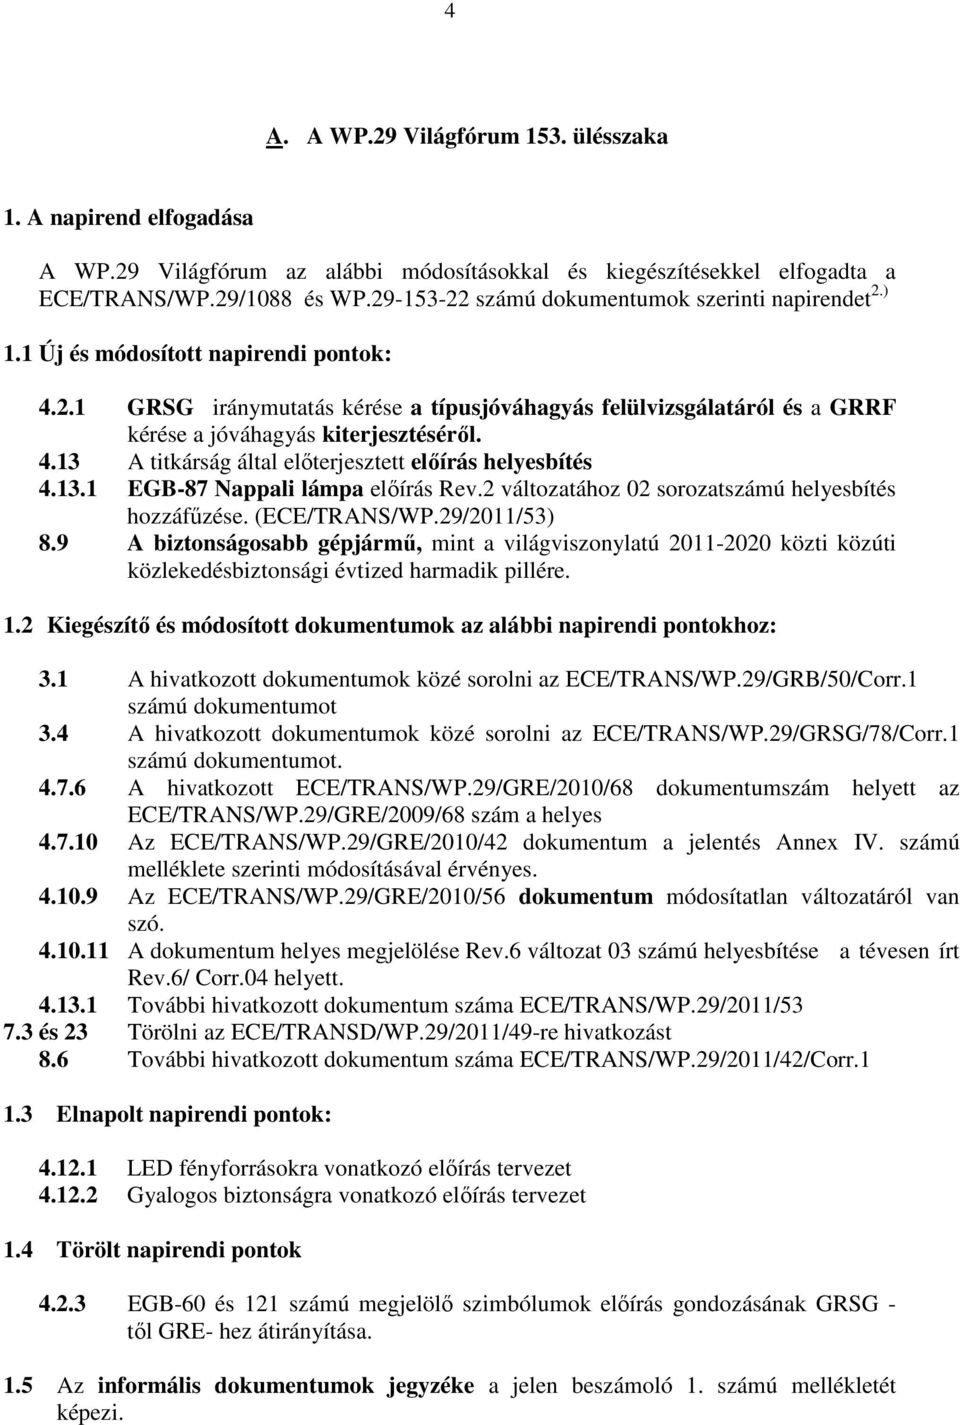 4.13 A titkárság által elıterjesztett elıírás helyesbítés 4.13.1 EGB-87 Nappali lámpa elıírás Rev.2 változatához 02 sorozatszámú helyesbítés hozzáfőzése. (ECE/TRANS/WP.29/2011/53) 8.